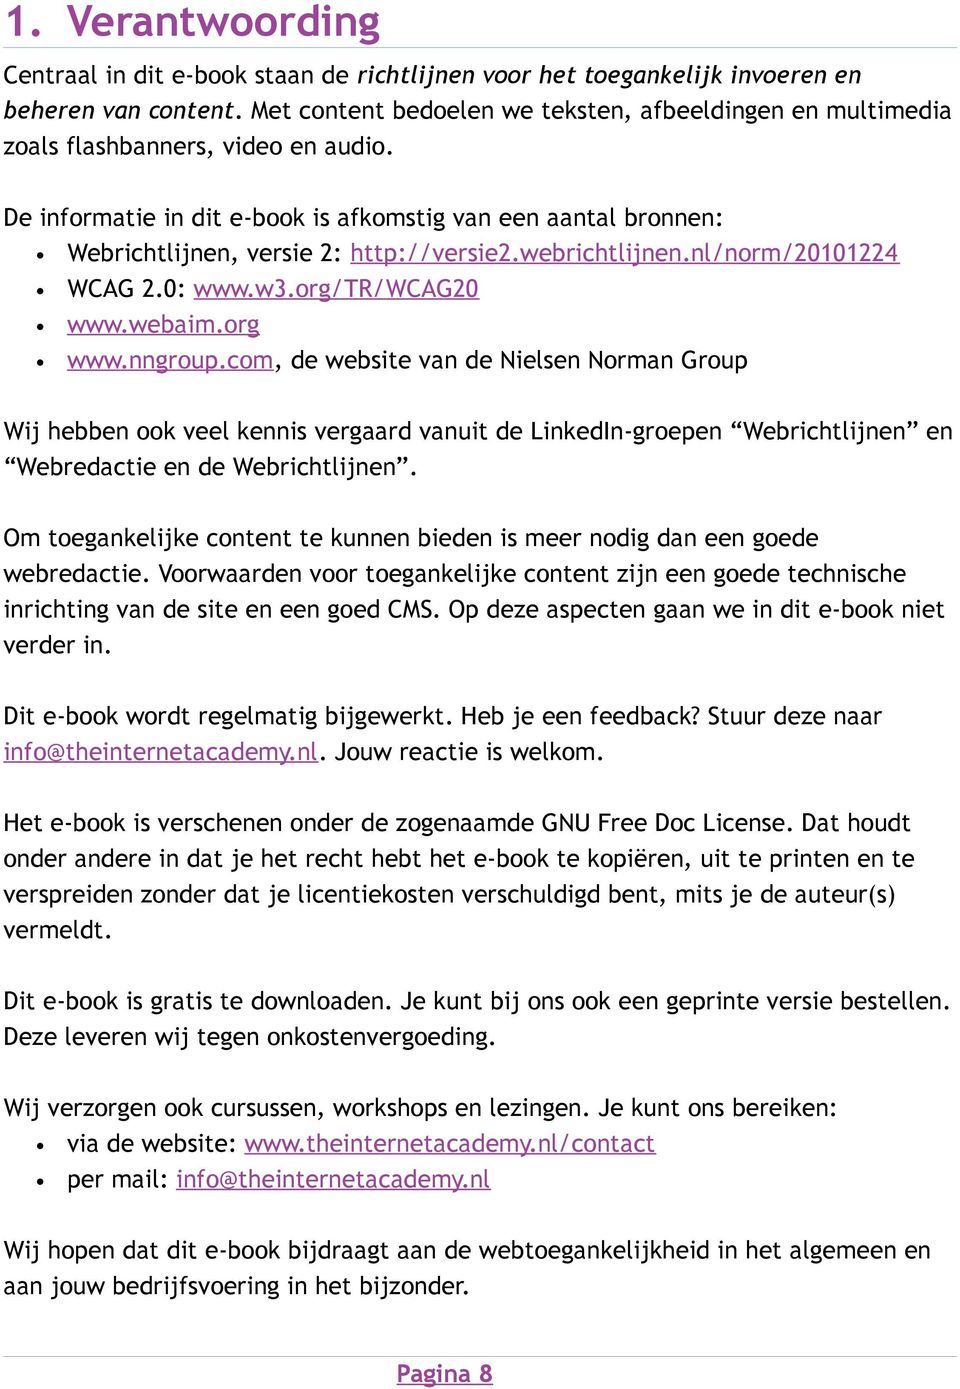 De informatie in dit e-book is afkomstig van een aantal bronnen: Webrichtlijnen, versie 2: http://versie2.webrichtlijnen.nl/norm/20101224 WCAG 2.0: www.w3.org/tr/wcag20 www.webaim.org www.nngroup.